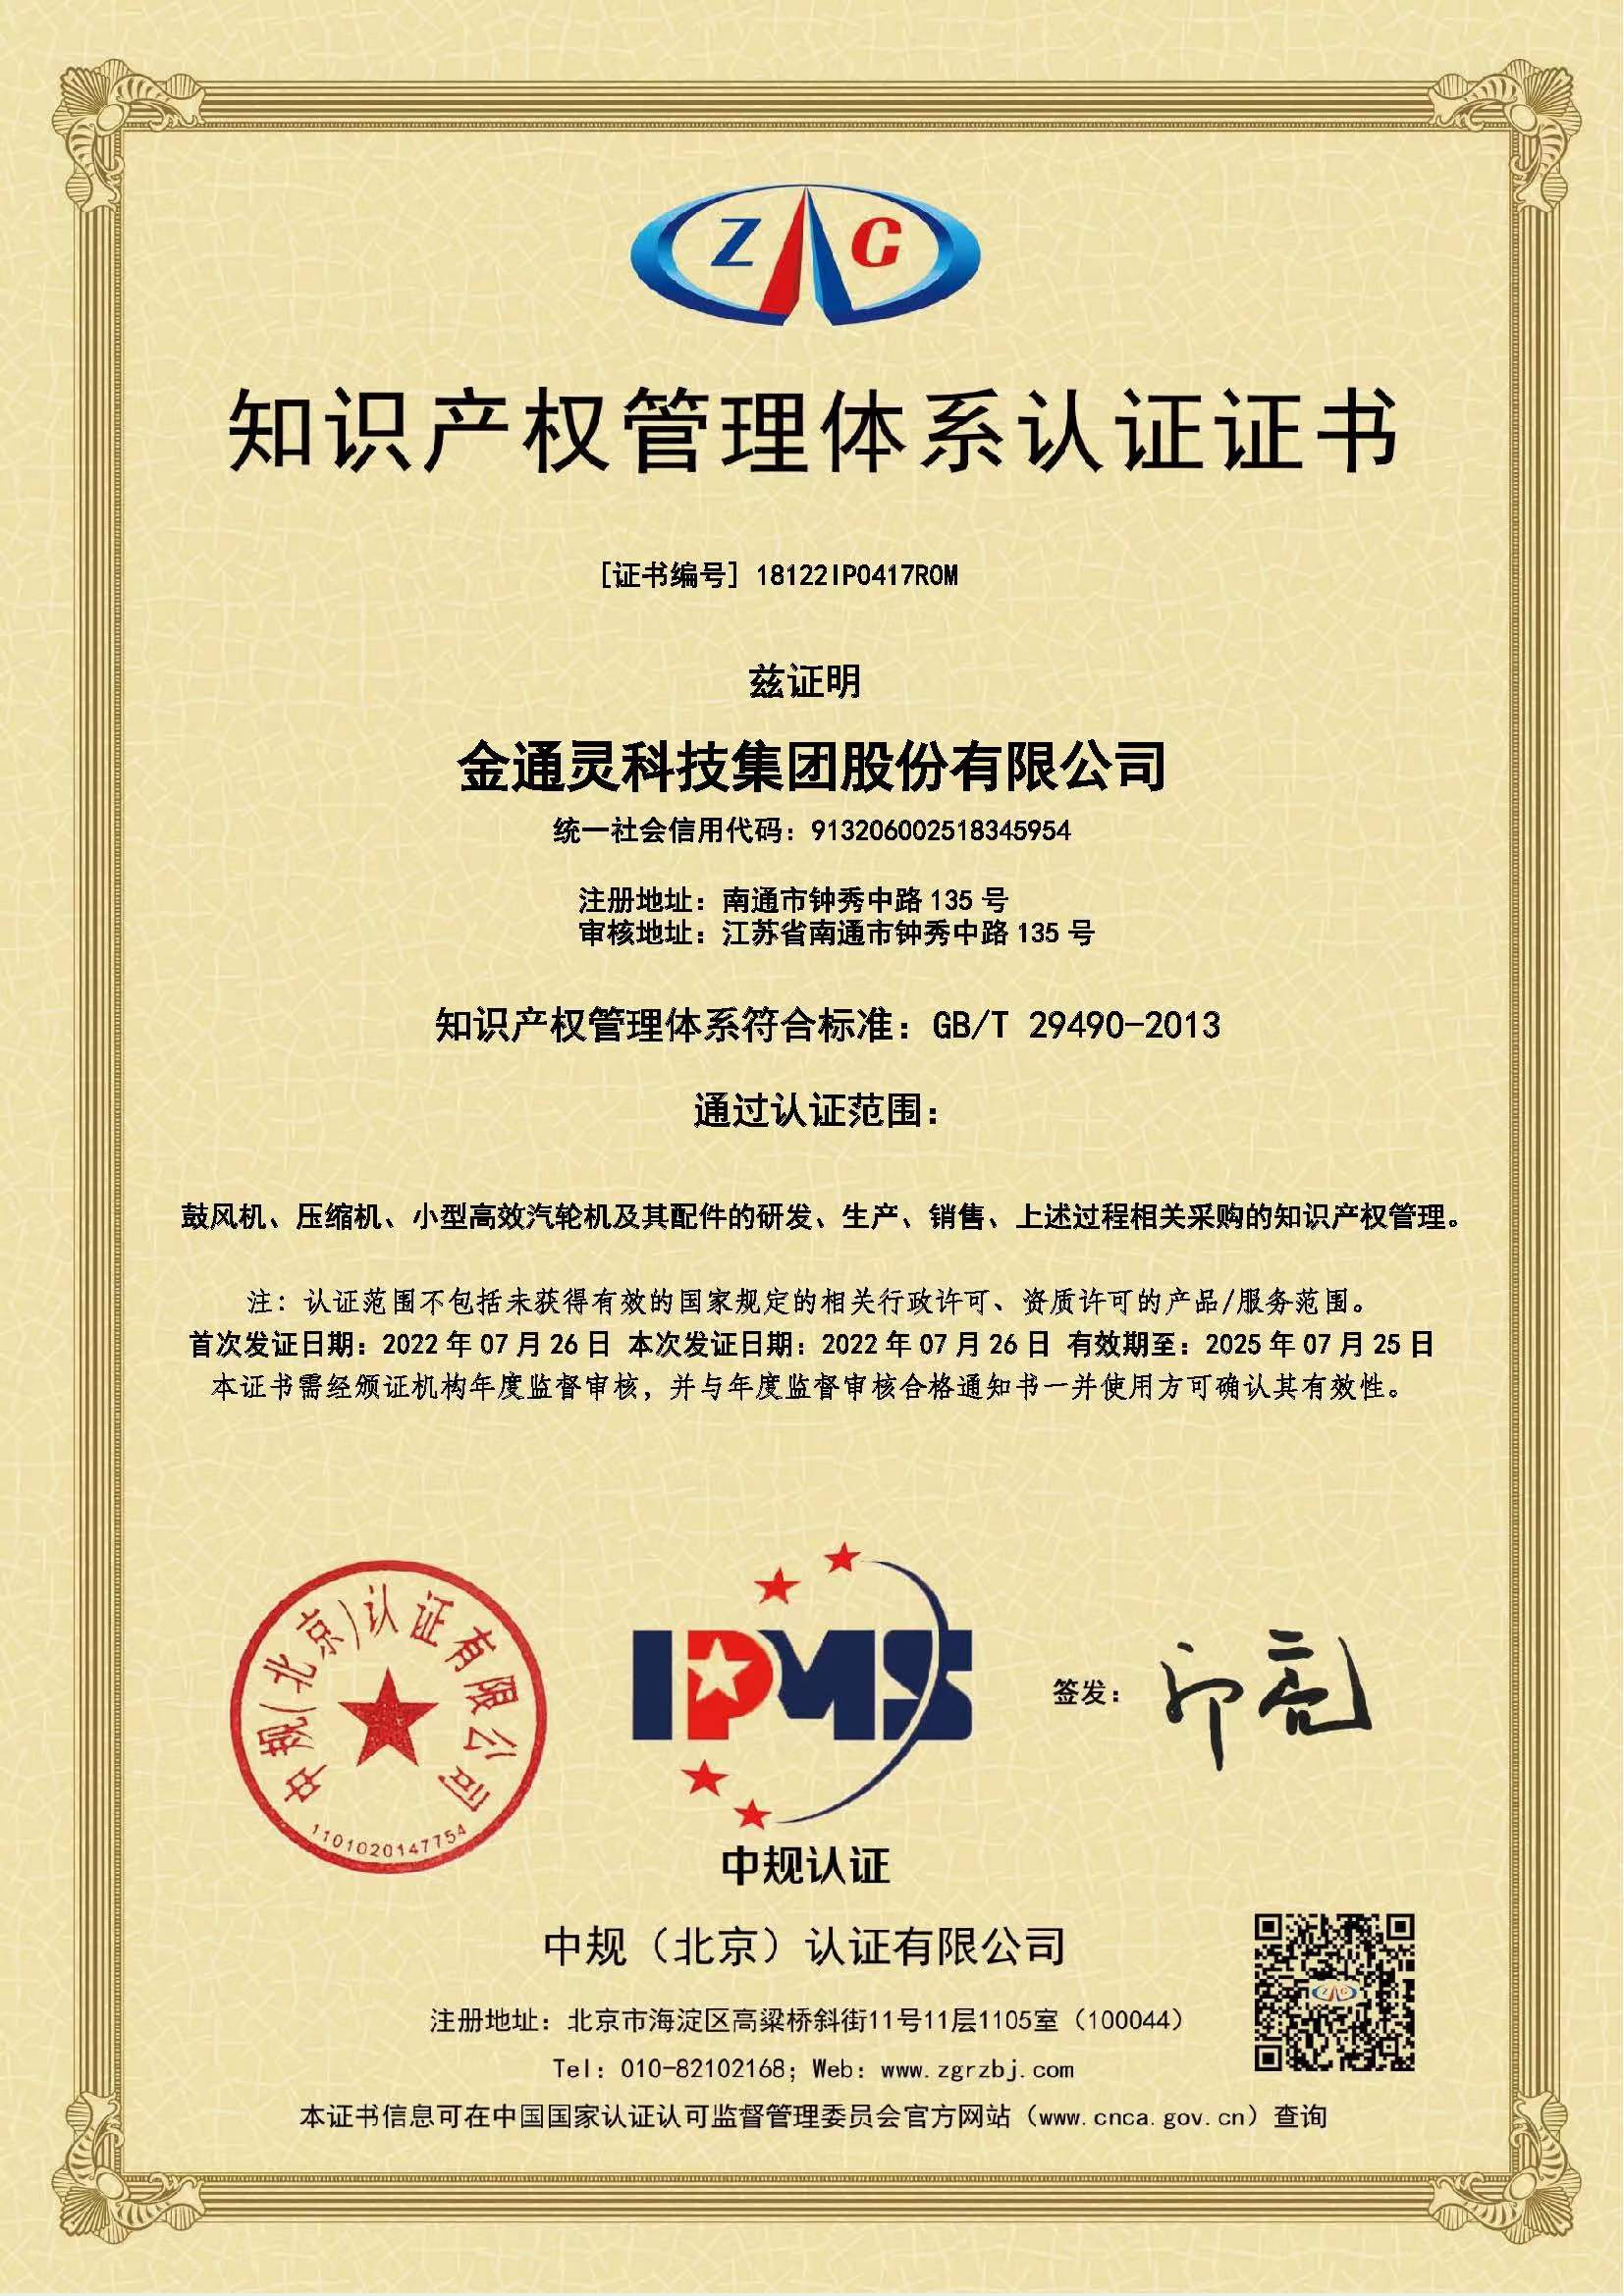 祝贺！金通灵科技集团股份有限公司获得知识产权管理体系认证证书